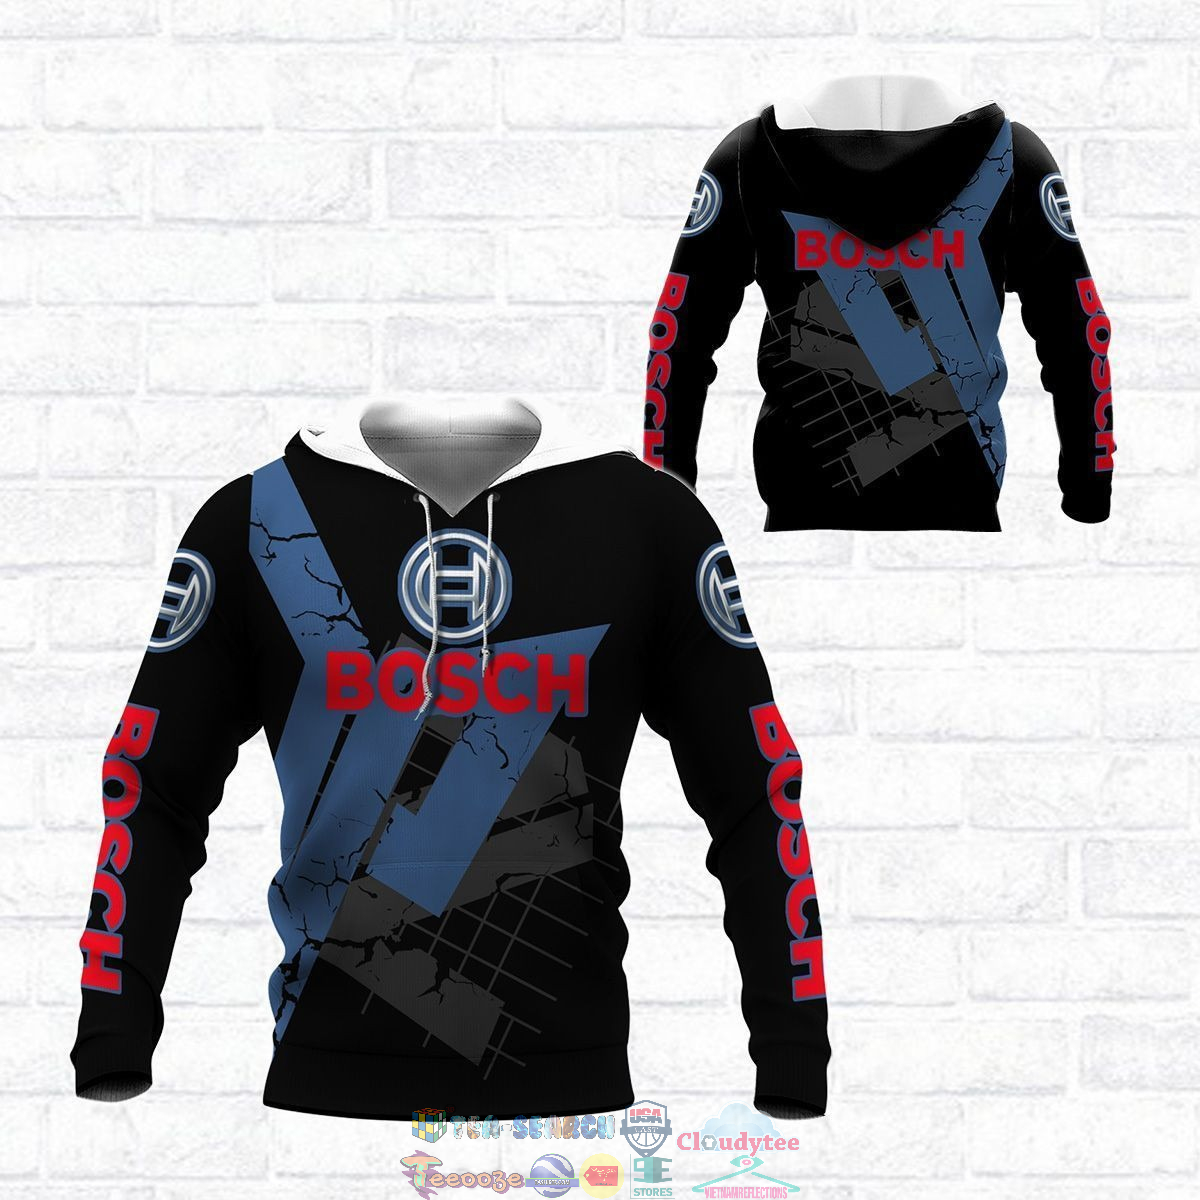 Robert Bosch GmbH ver 9 3D hoodie and t-shirt – Saleoff